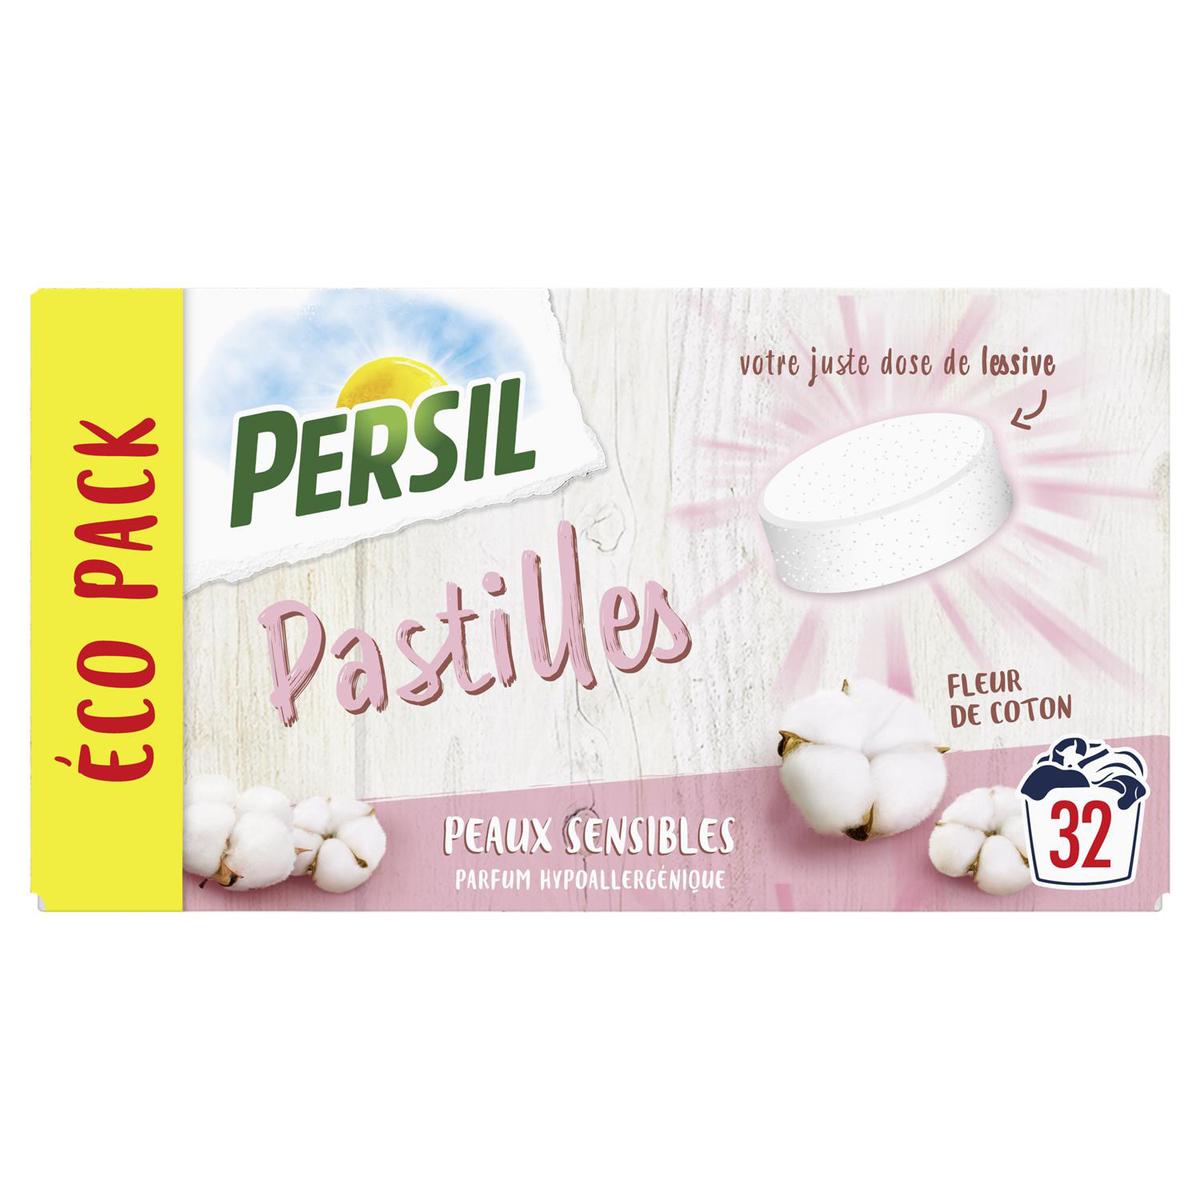 Persil Lessive pastilles peaux sensibles hypoallergénique, 32 pièces